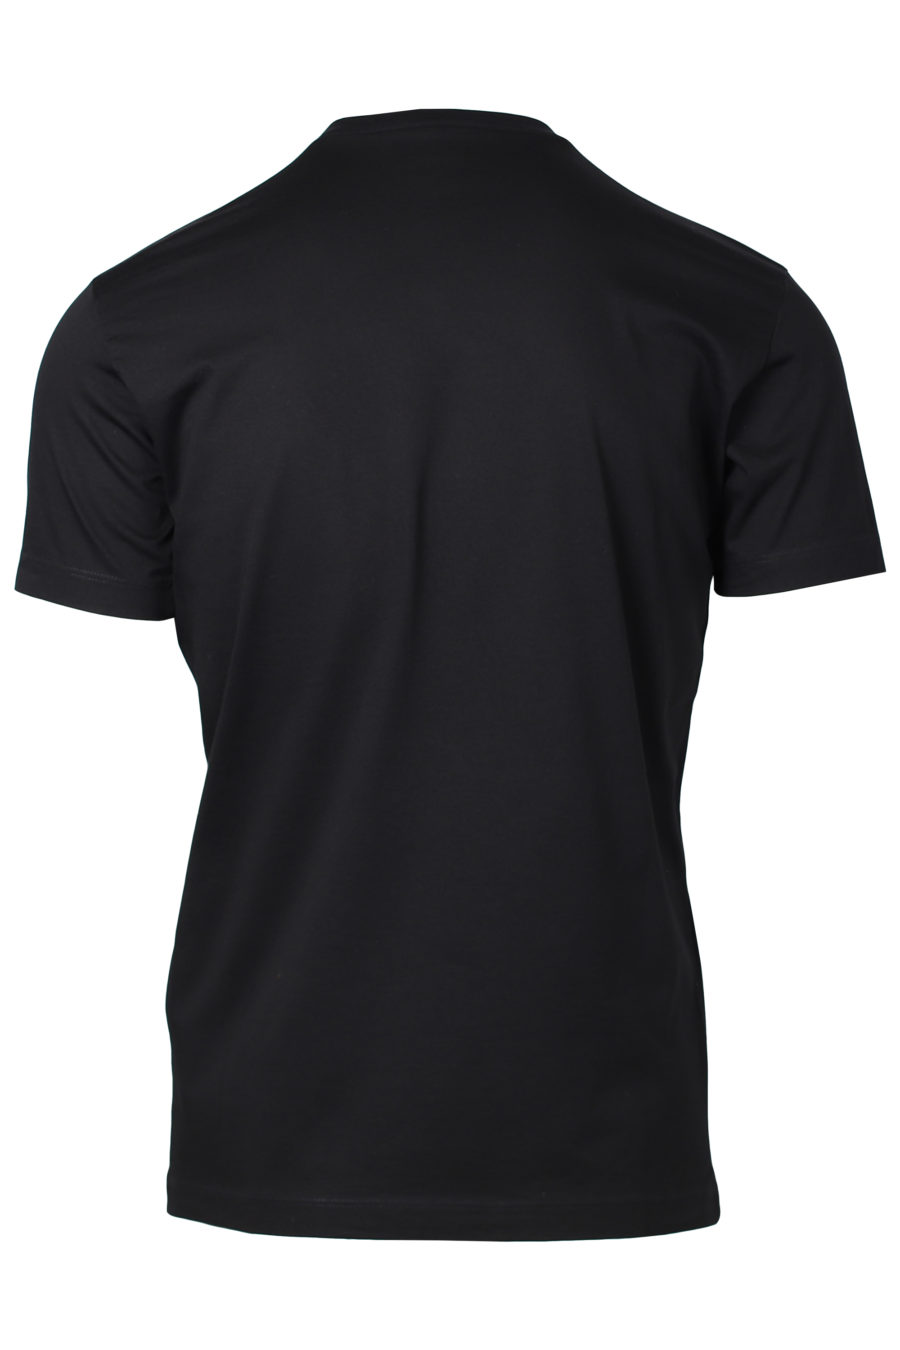 T-shirt noir avec impression de feuilles - IMG 2219